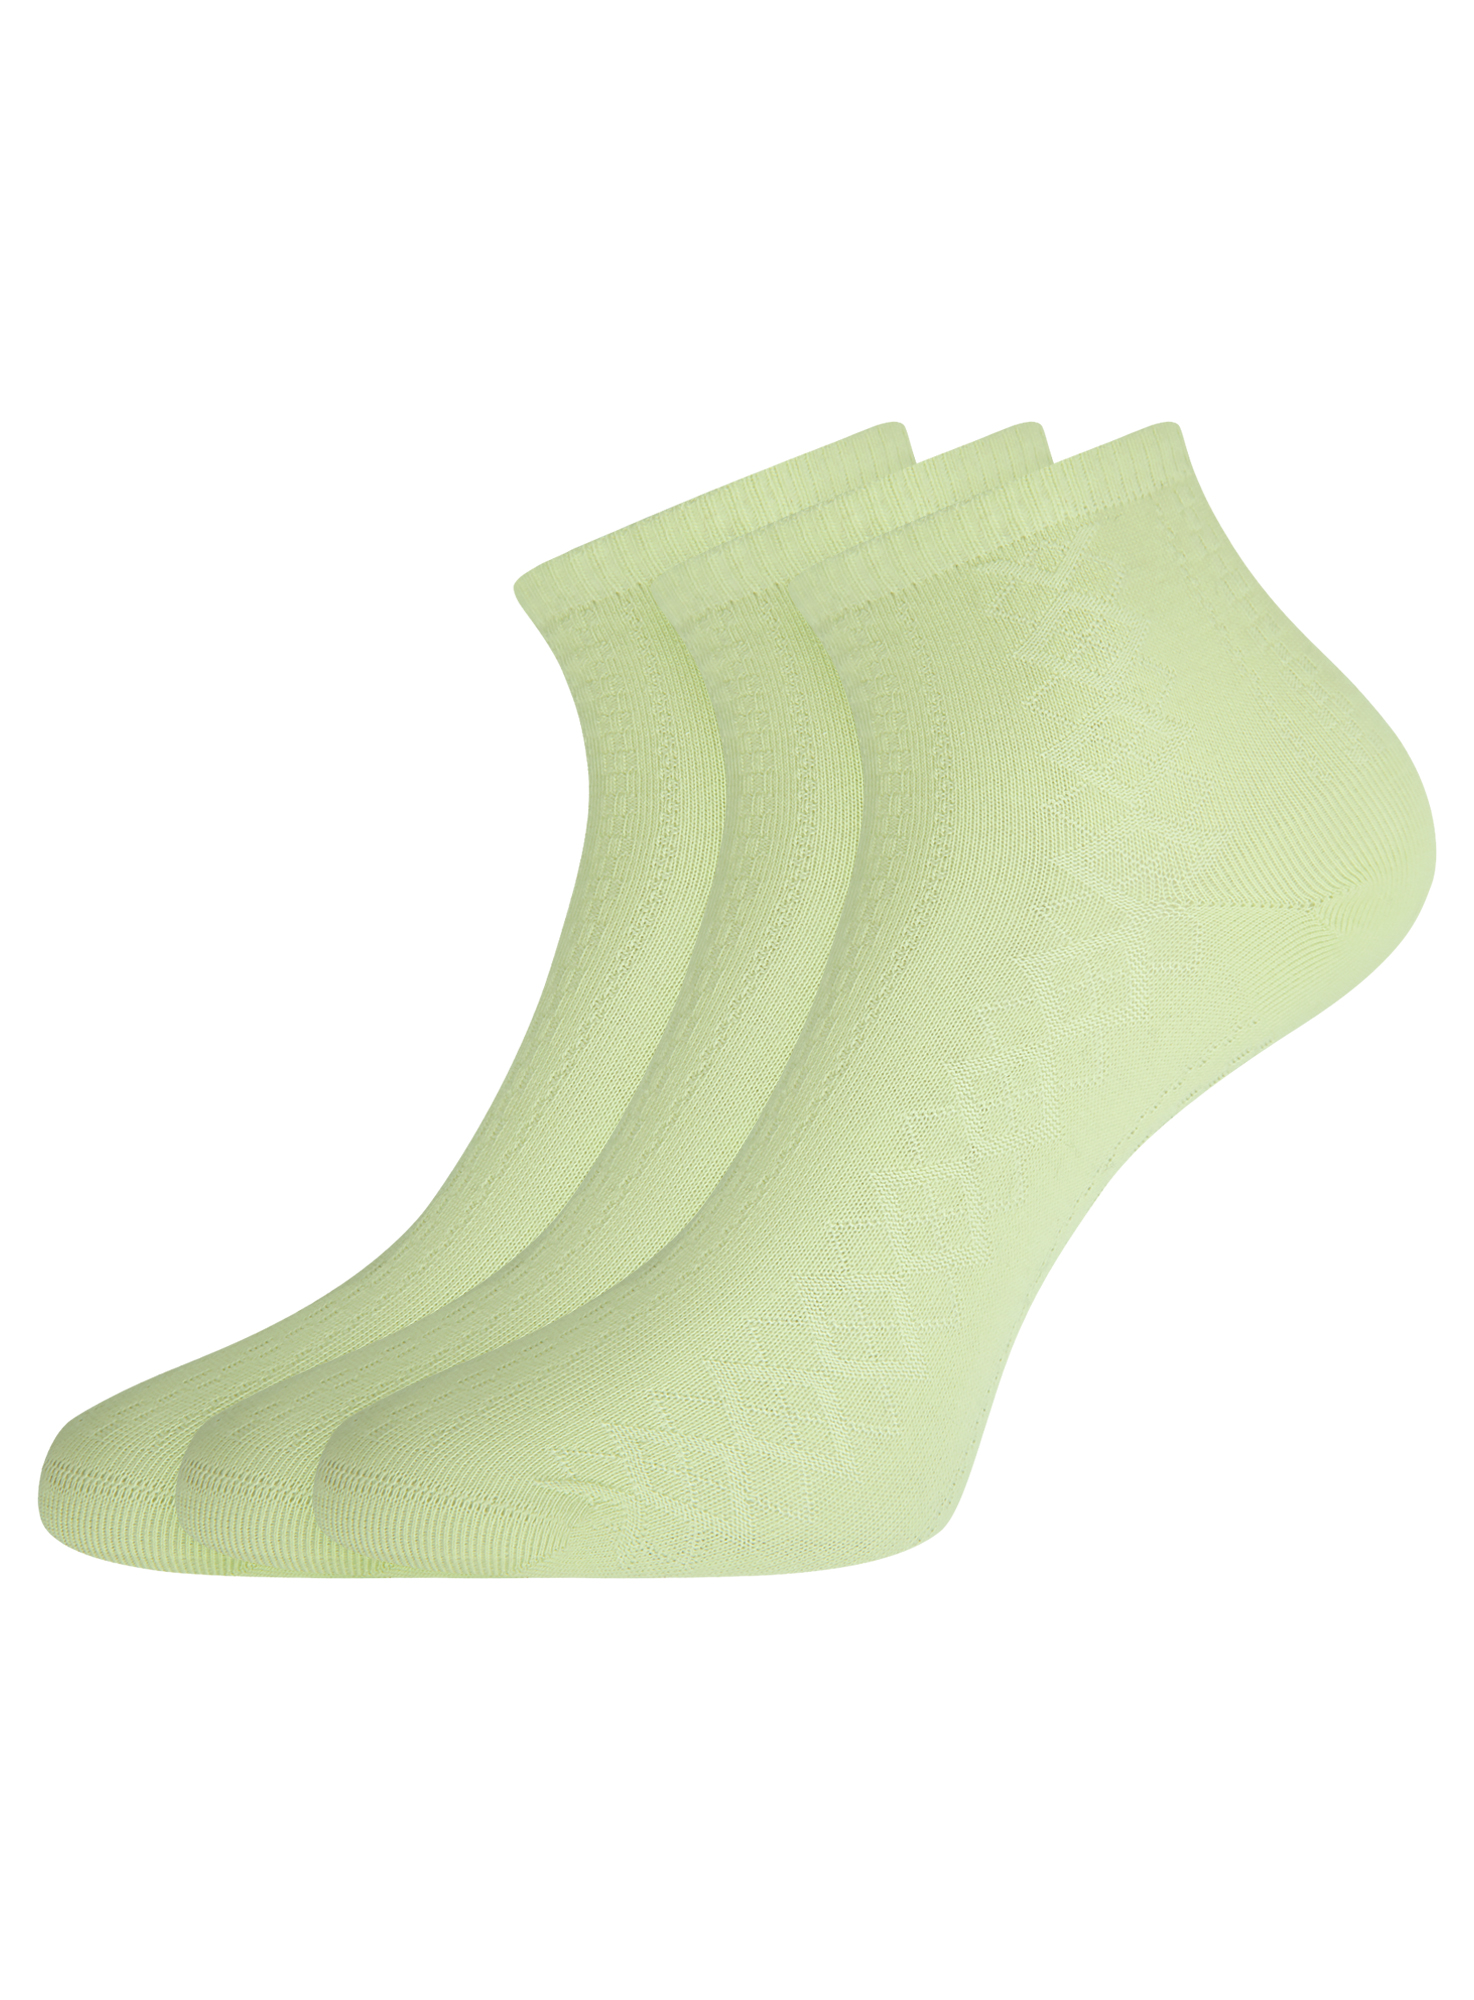 Комплект носков женских oodji 57102709T3 зеленых 35-37